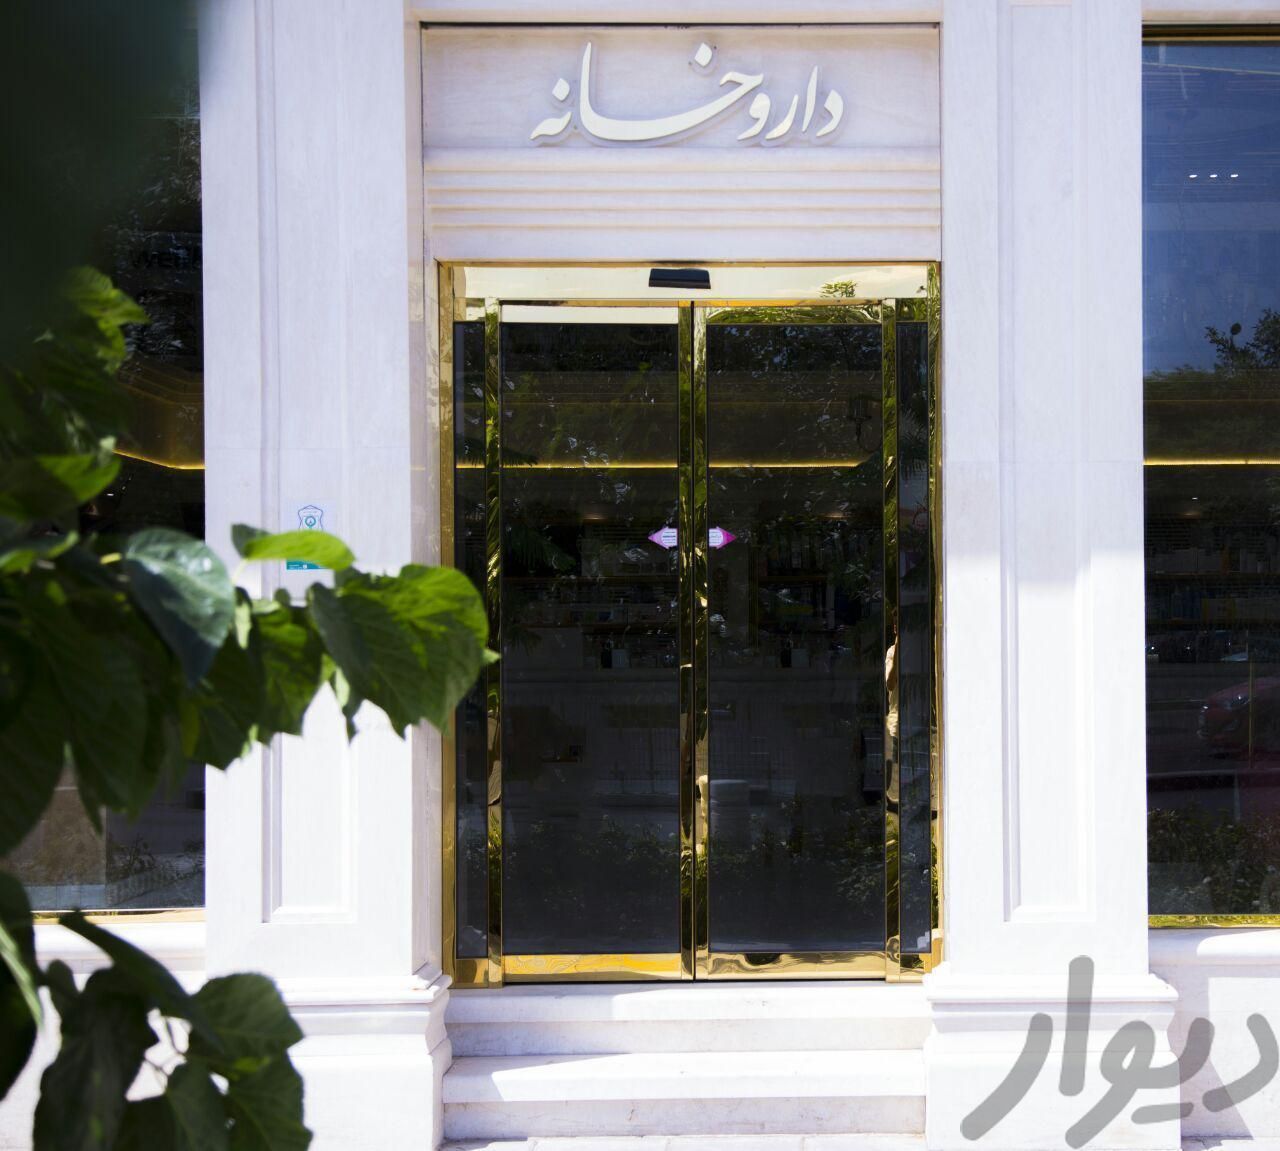 درب اتوماتیک برقی شیشه ای یونیک با موتور دانکر|مصالح و تجهیزات ساختمان|تهران, لویزان|دیوار